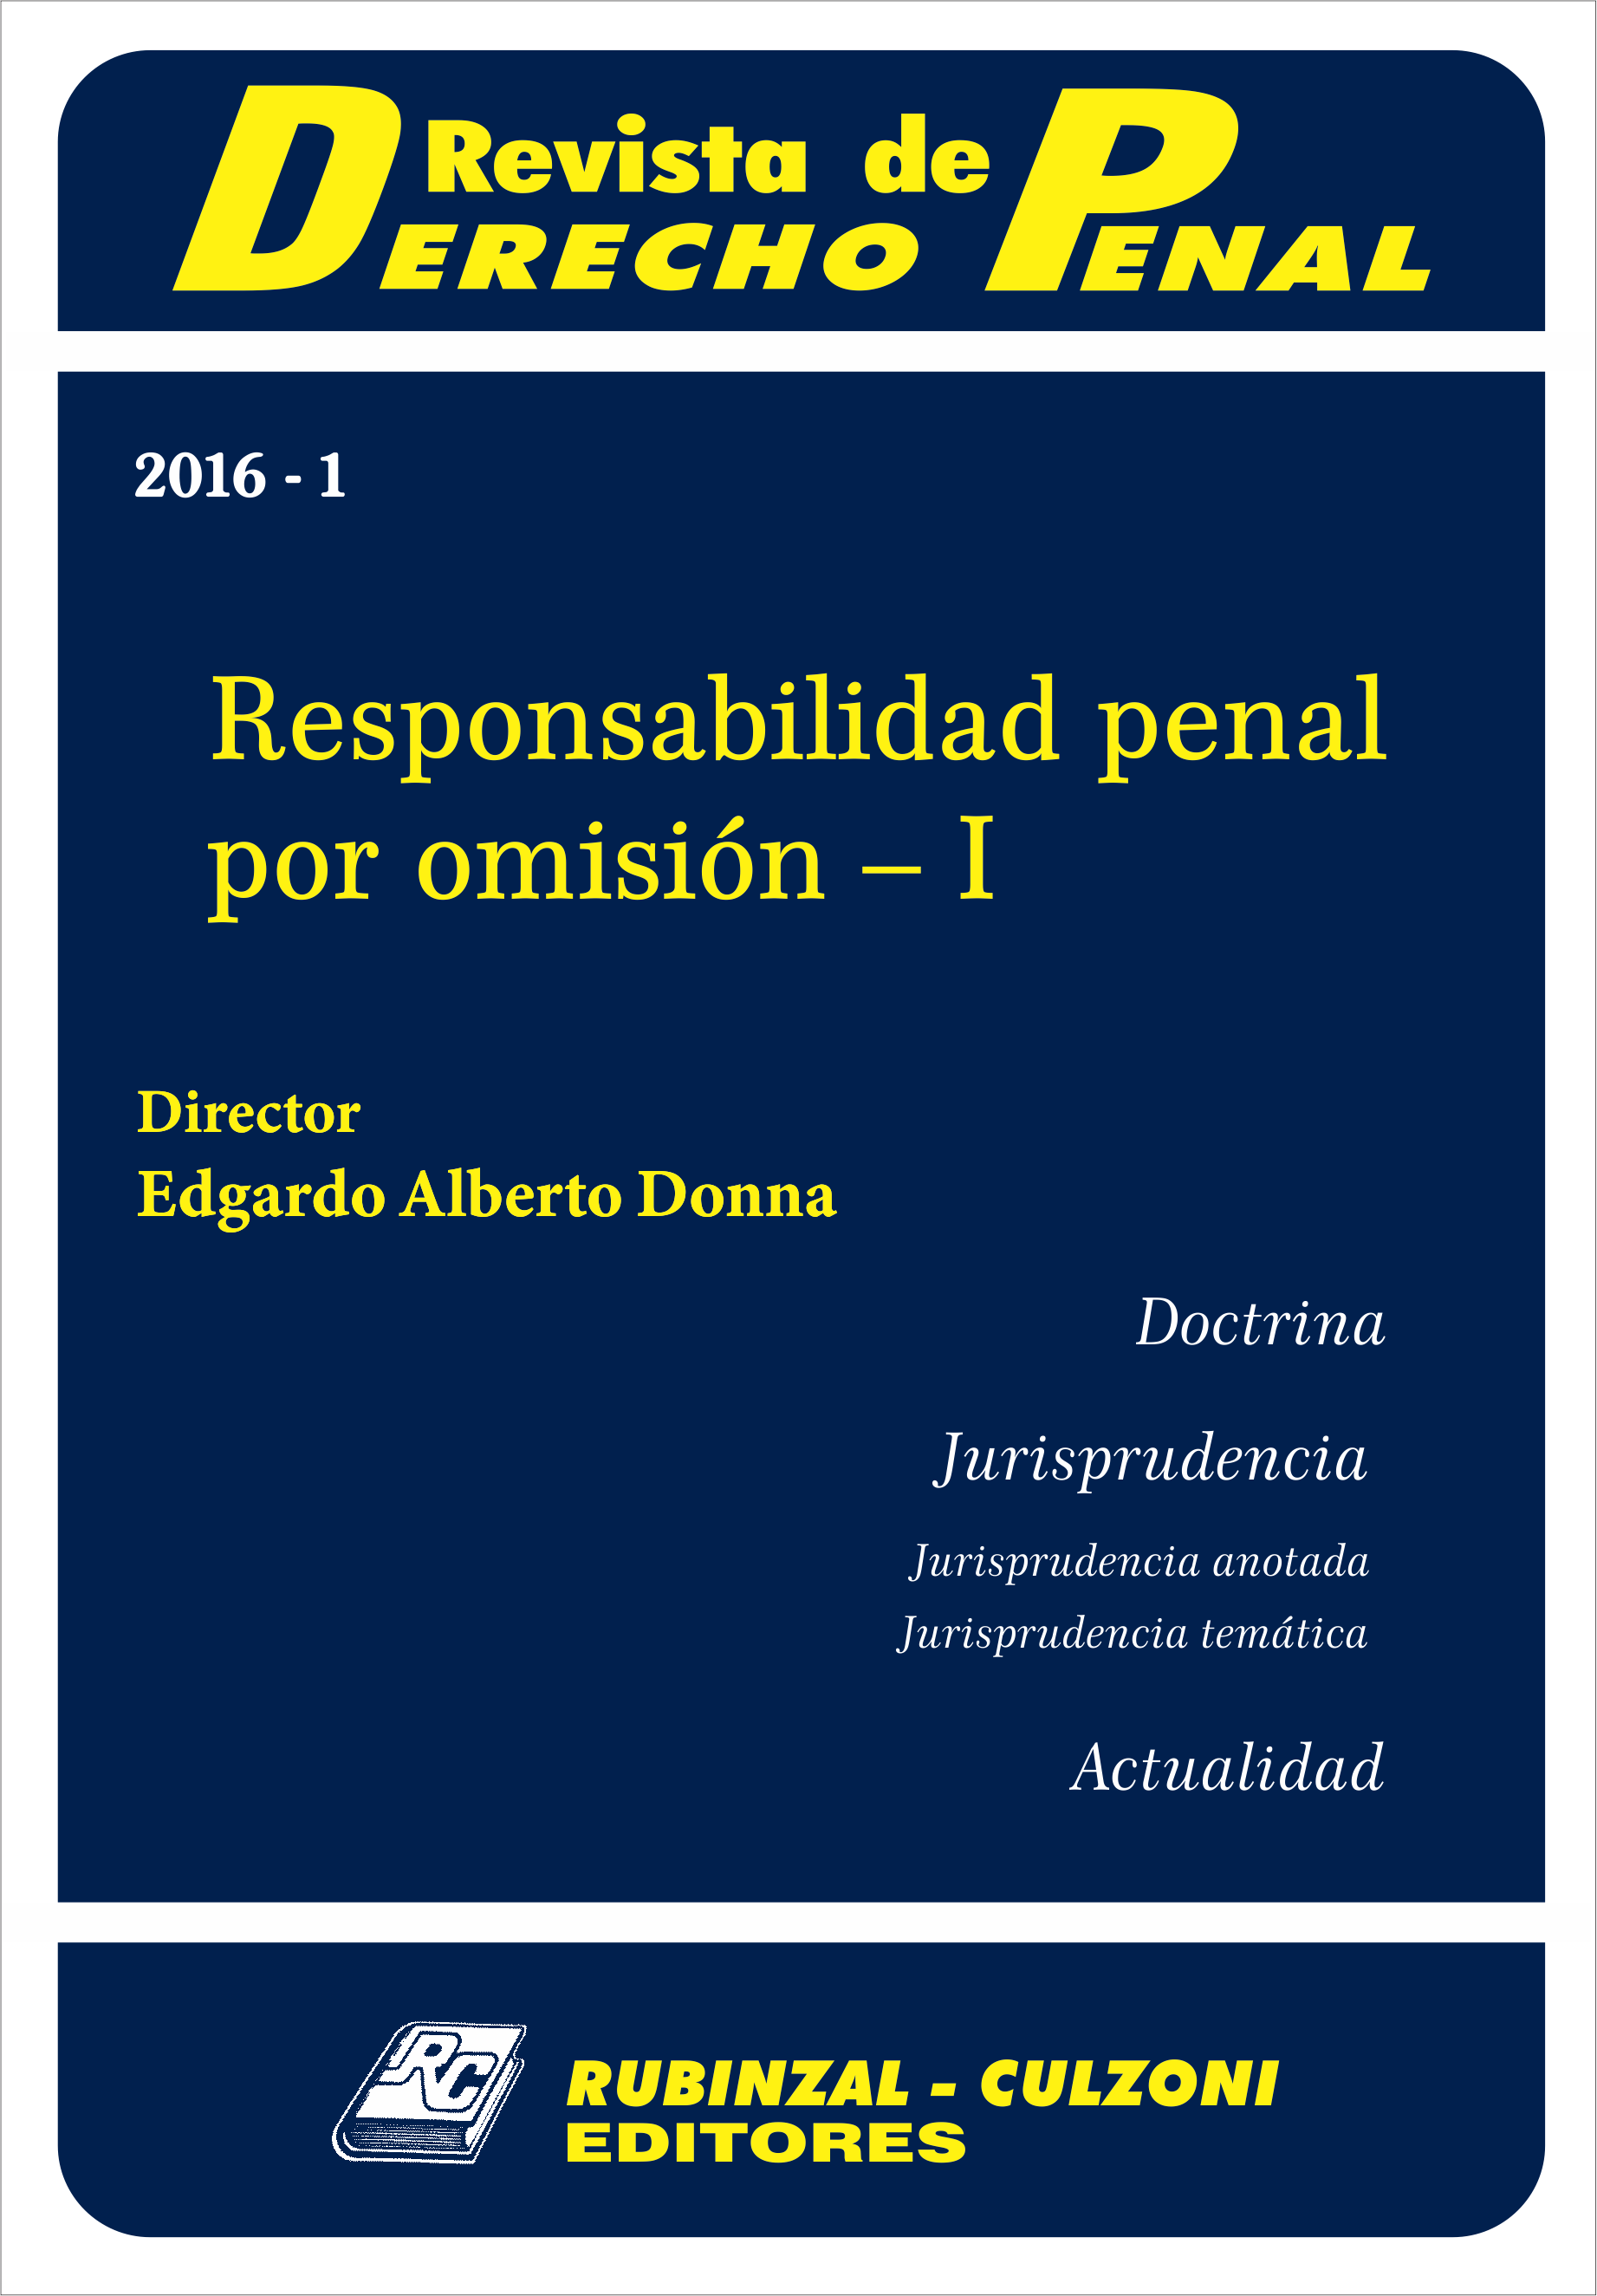 Revista de Derecho Penal - Responsabilidad penal por omisión - I [2016-1]